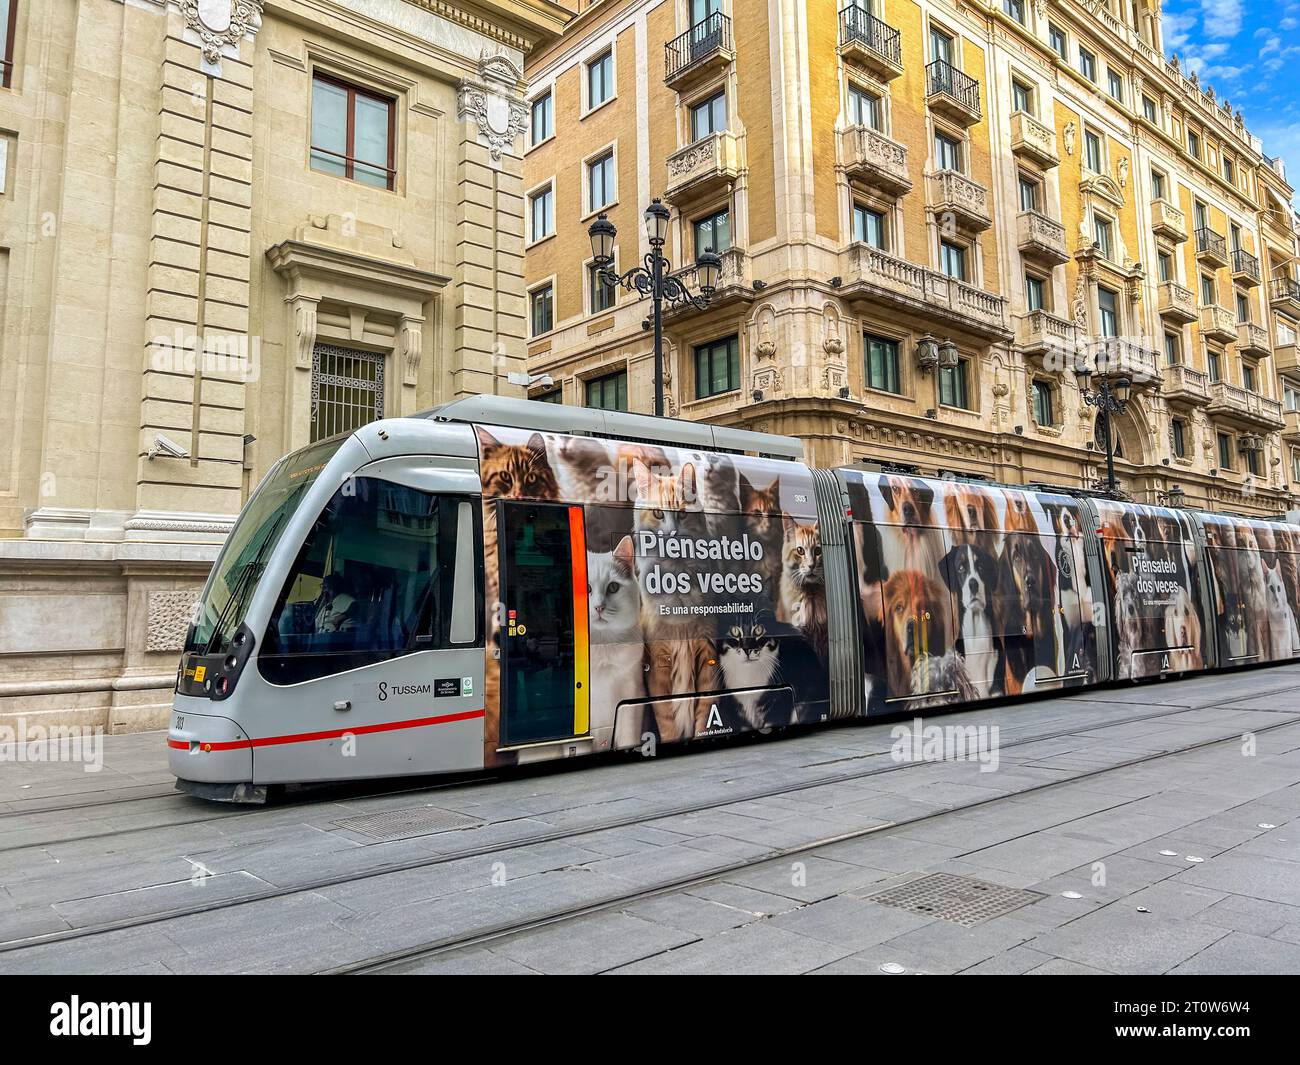 Seville, Spain, Public Transport, Tram on Plaza San Francisco, Street Scene, Advertising on side, neighborhoods Stock Photo